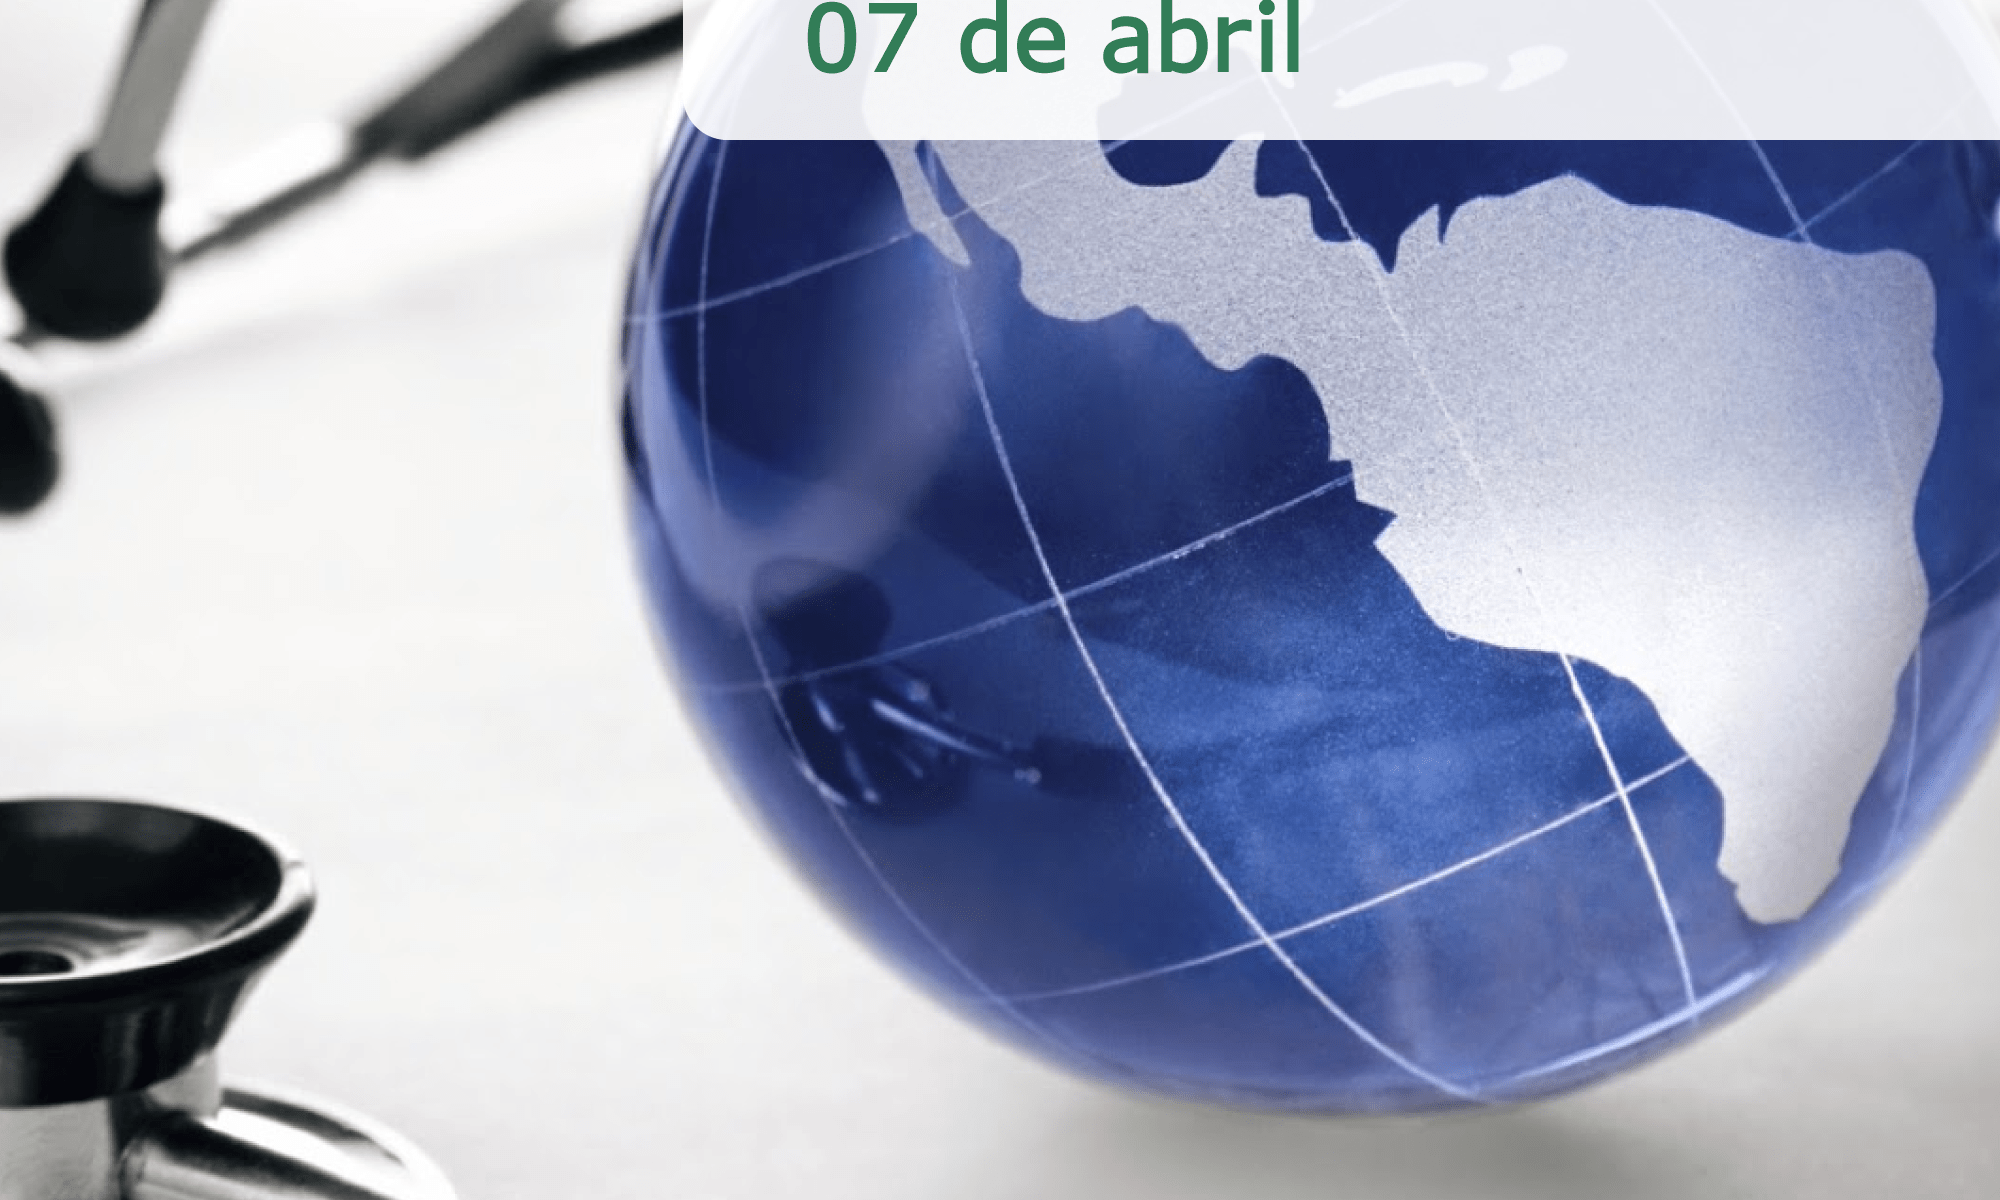 #PraCegoVer imagem ilustrativa. Há um globo terrestre com um estetoscópio ao redor. Está escrito: "Dia Mundial da Saúde 07 de abril". A logo da Retina Brasil aparece no canto inferior direito.